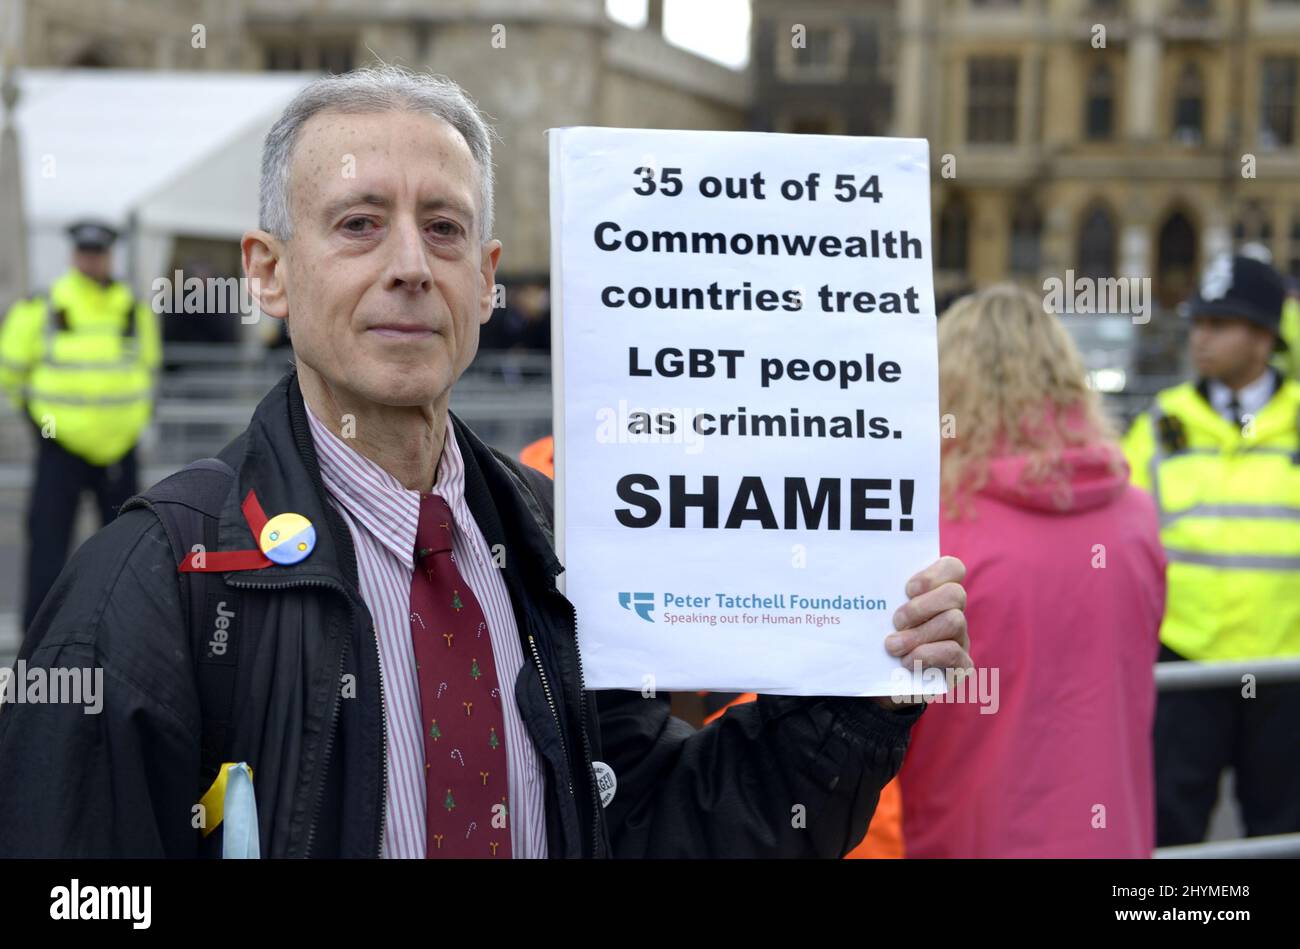 Peter Tatchell - LGBT e attivista per i diritti umani - fuori dall'Abbazia di Westminster, mentre politici e regine arrivano per il servizio del Commonwealth Day, Marc Foto Stock